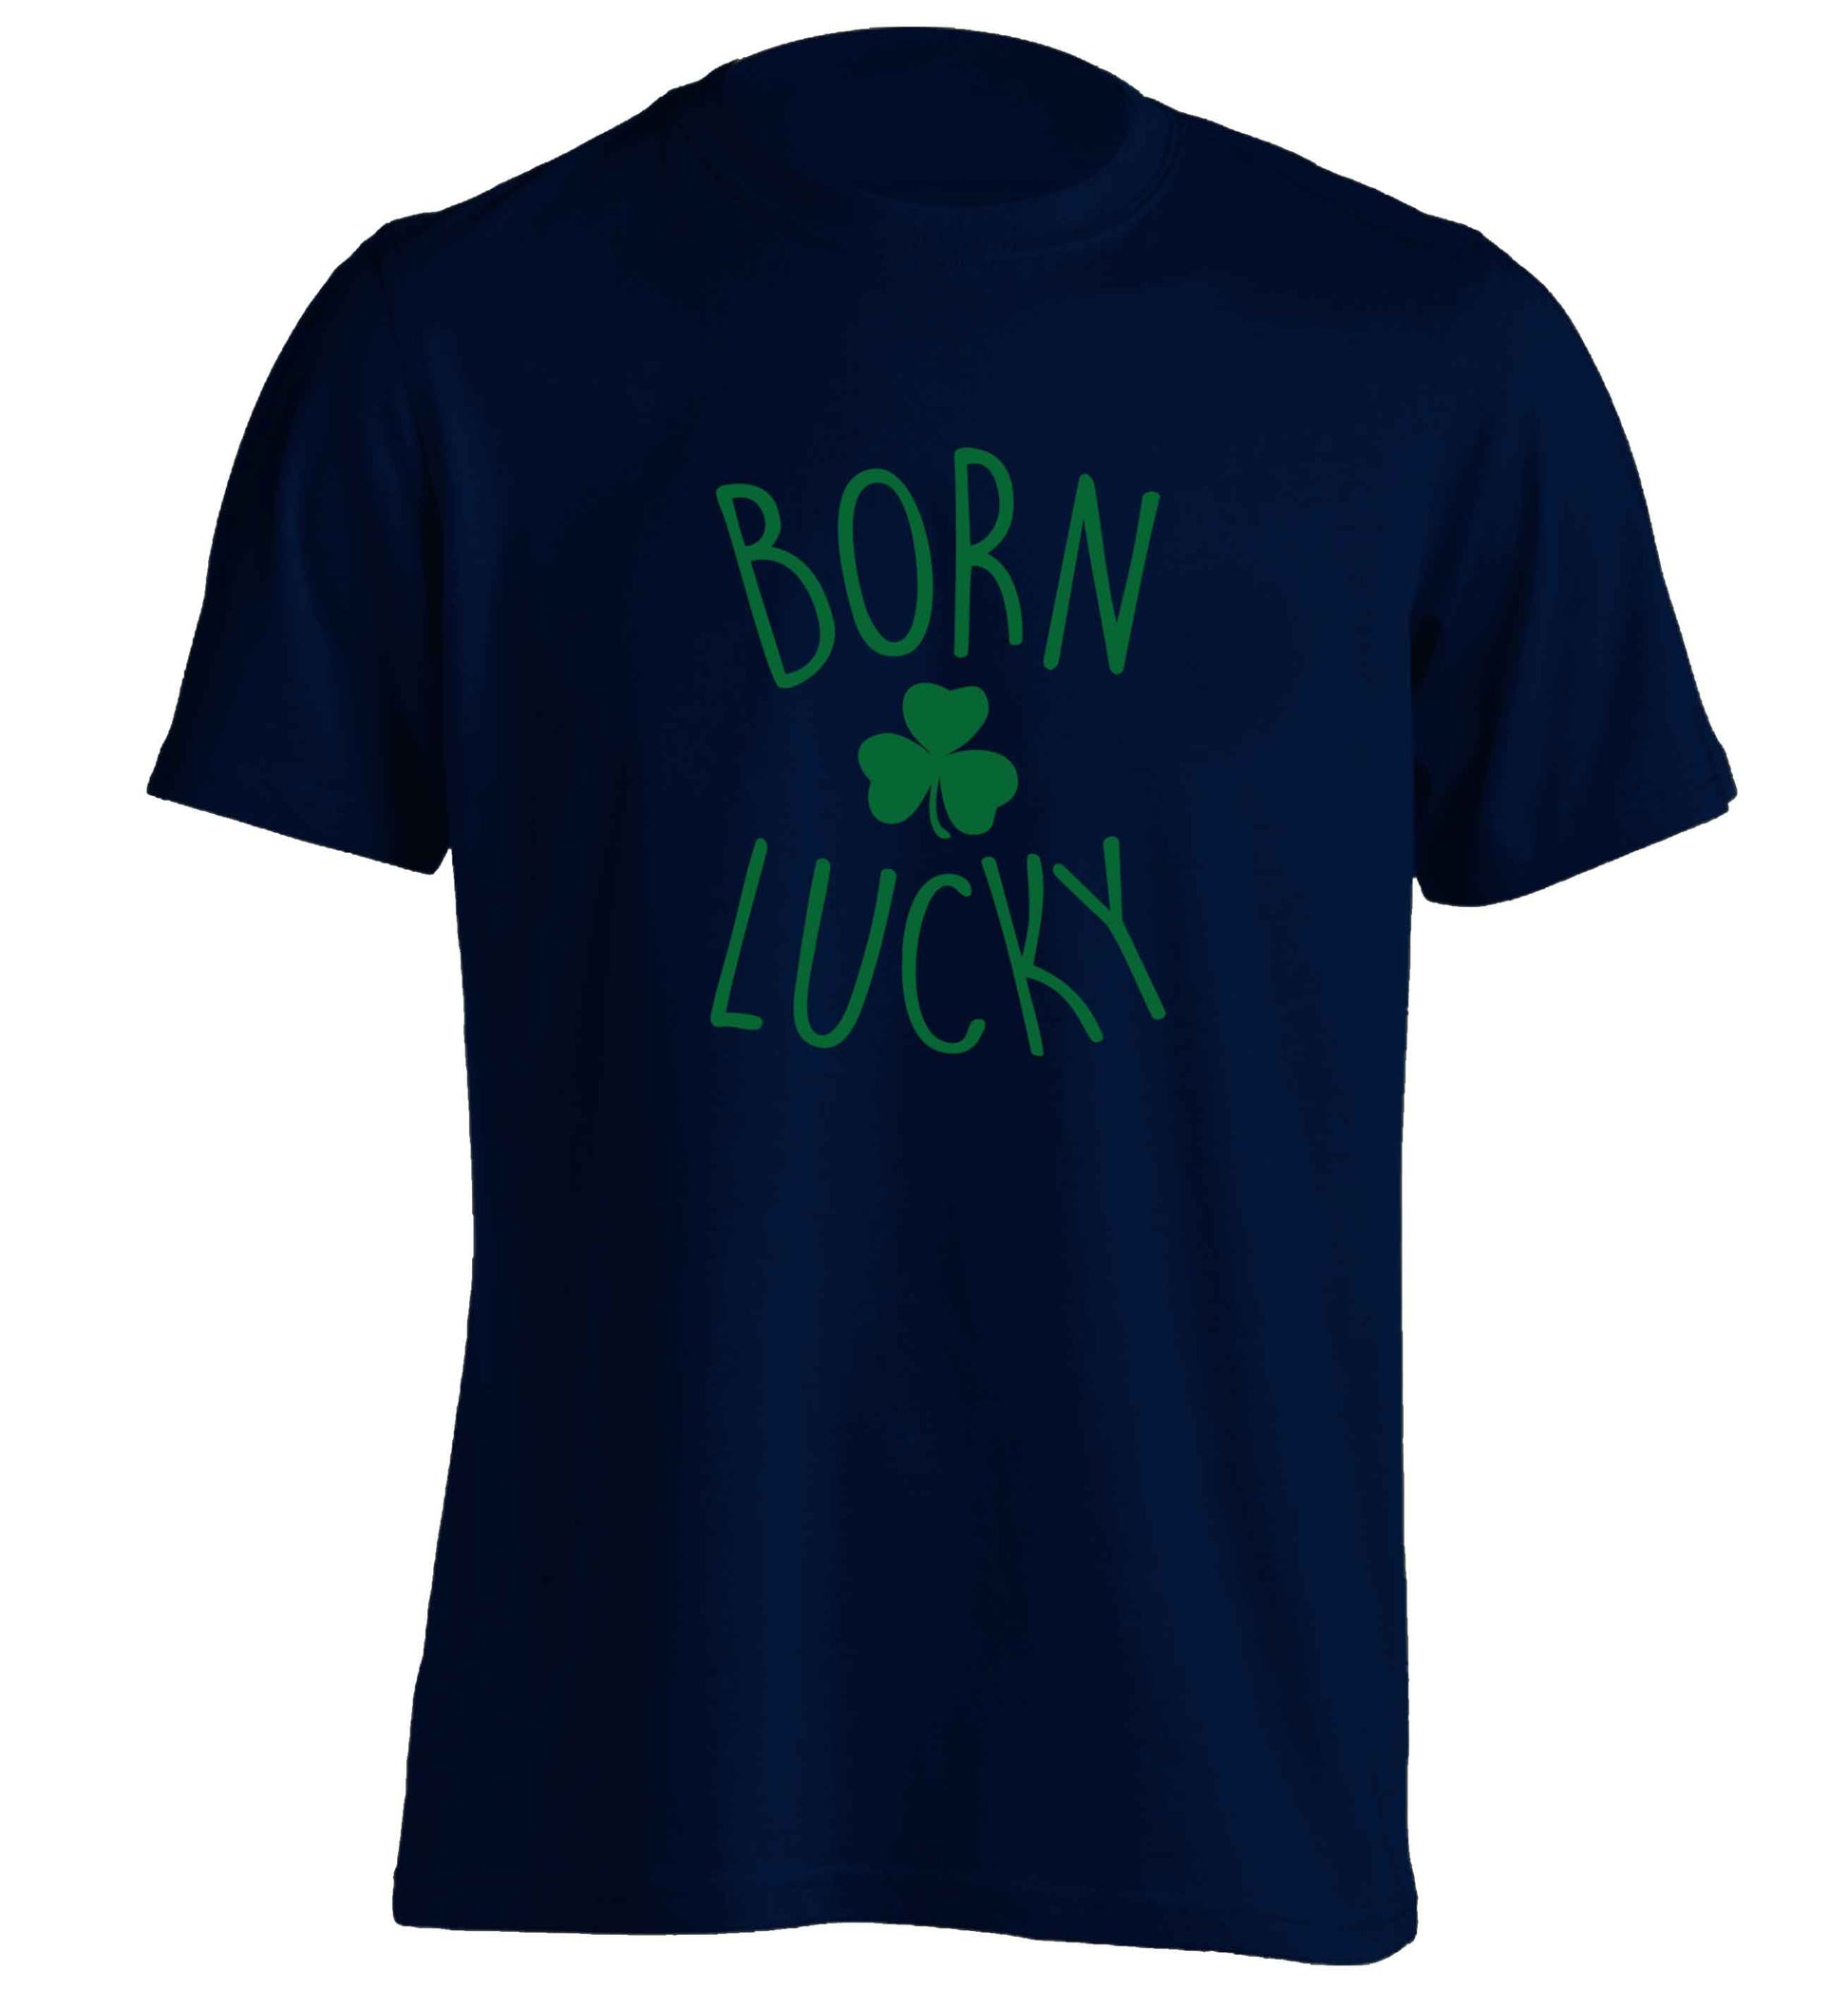 Born Lucky adults unisex navy Tshirt 2XL